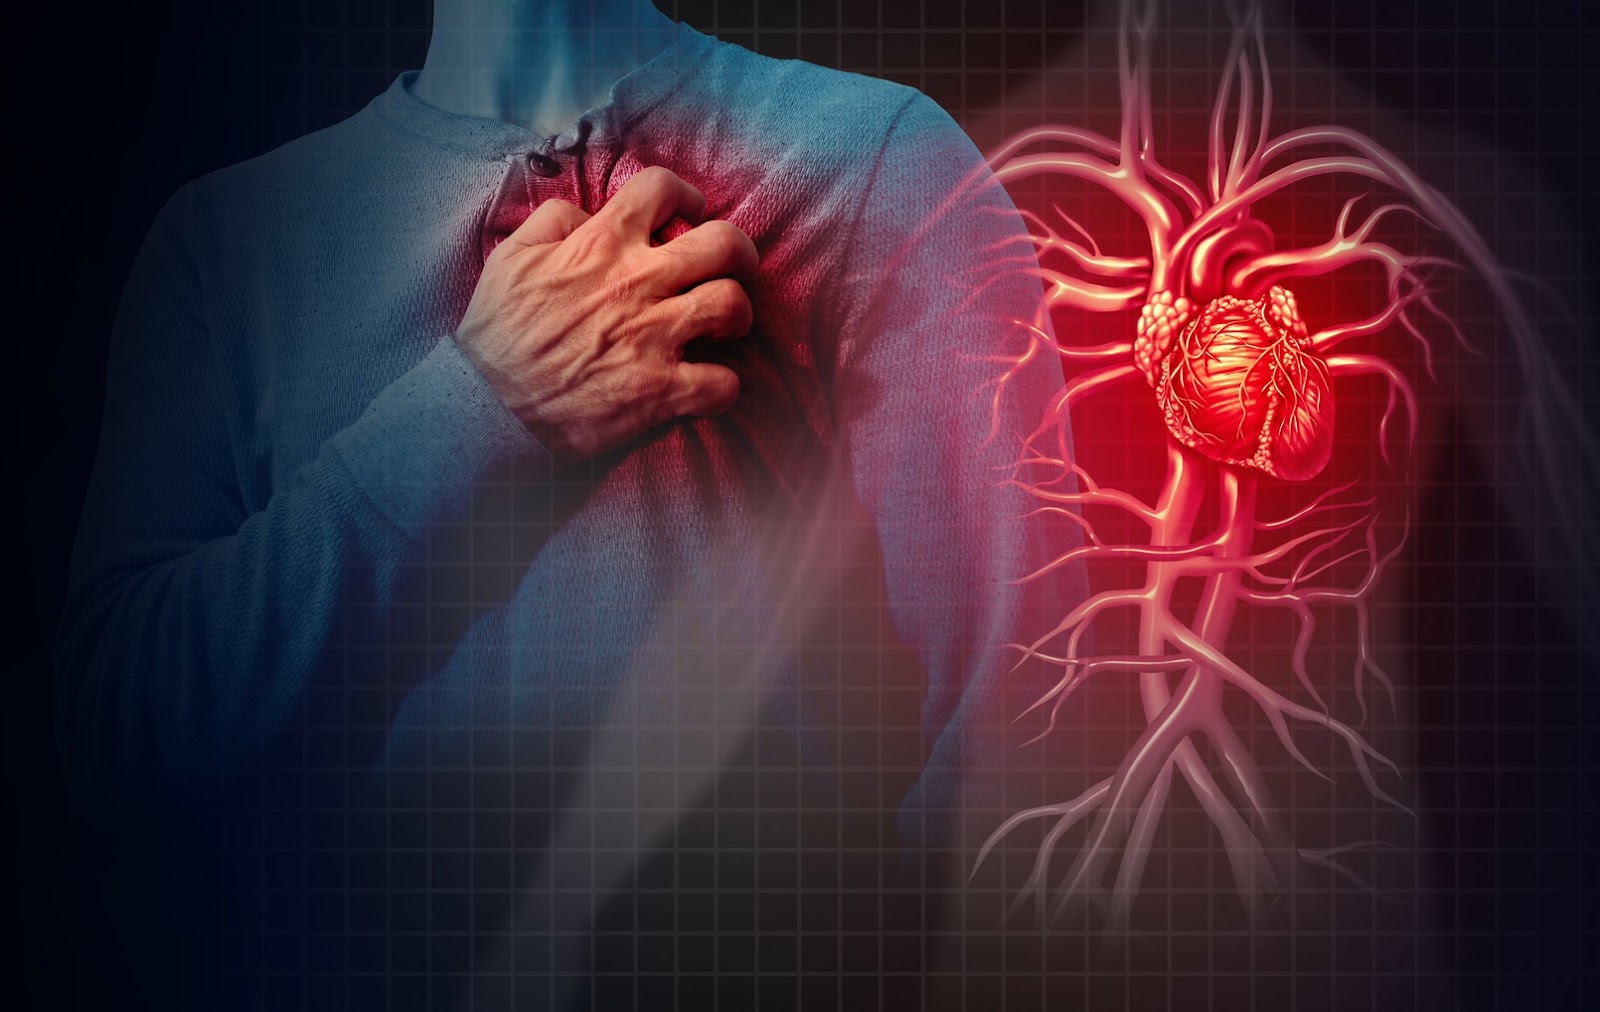 สารยับยั้ง SGLT2 ได้รับการอนุมัติสำหรับการรักษาภาวะหัวใจล้มเหลวหรือไม่?